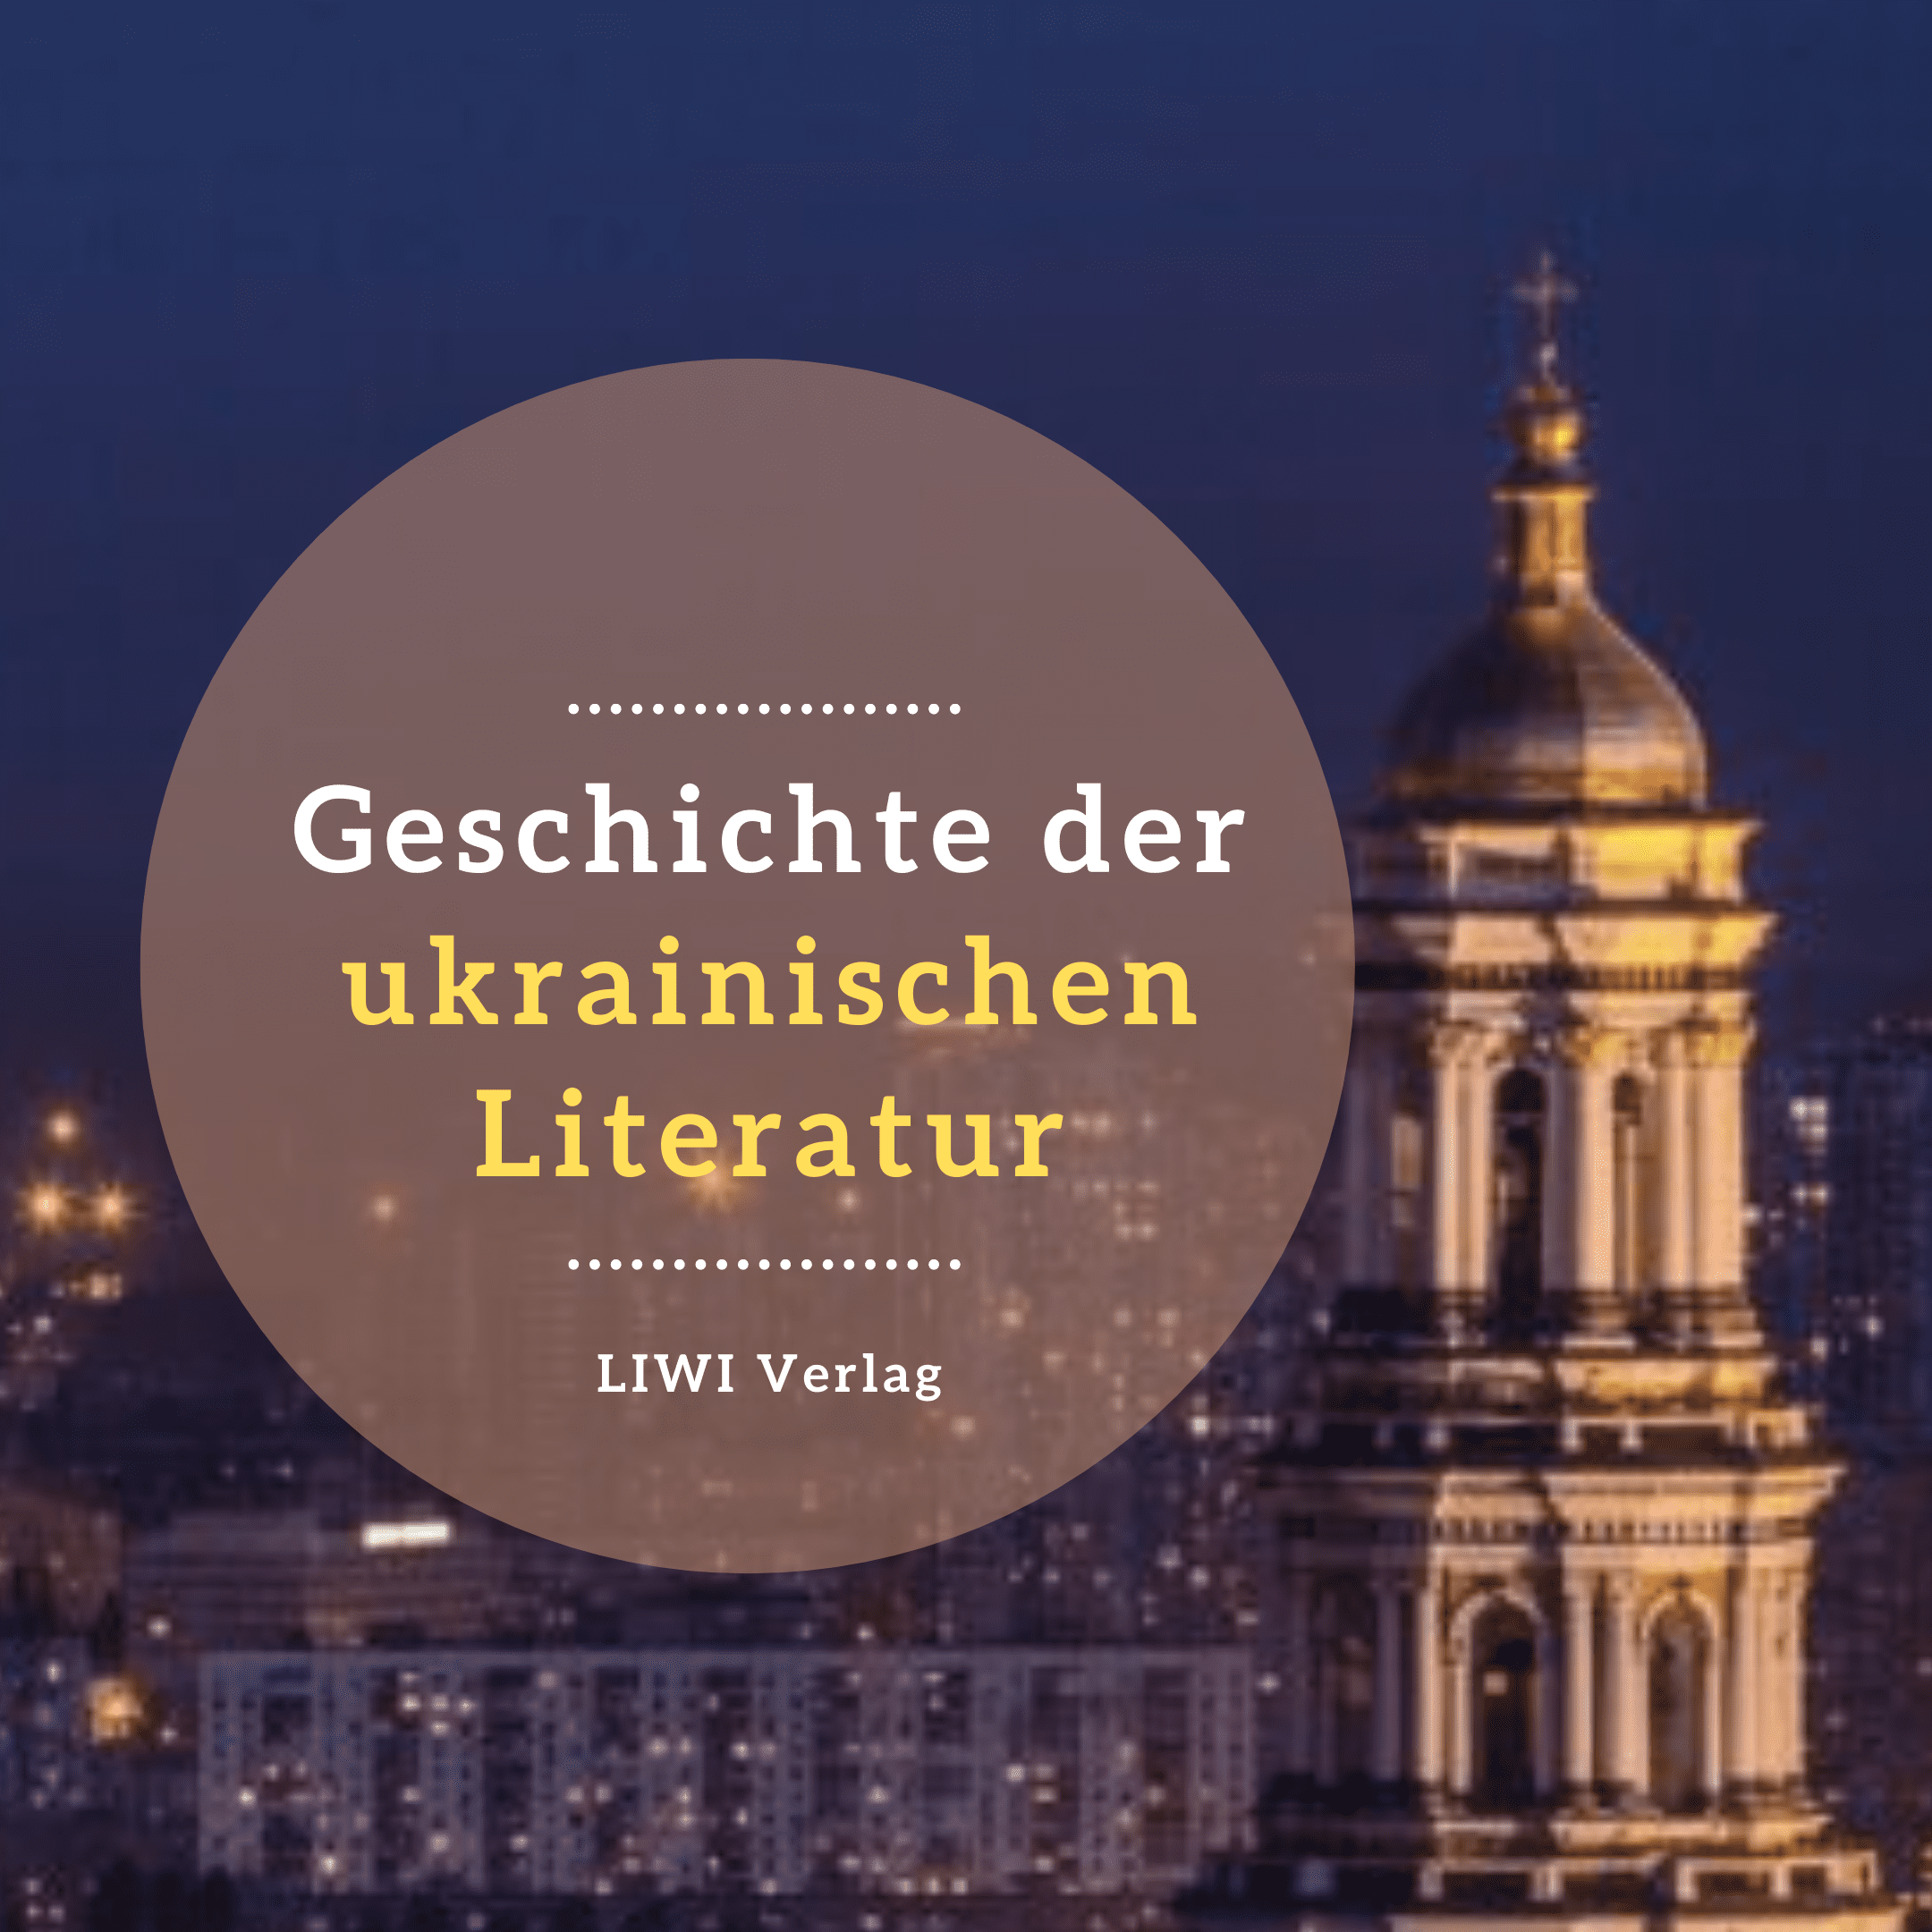 Geschichte der ukrainischen literatur